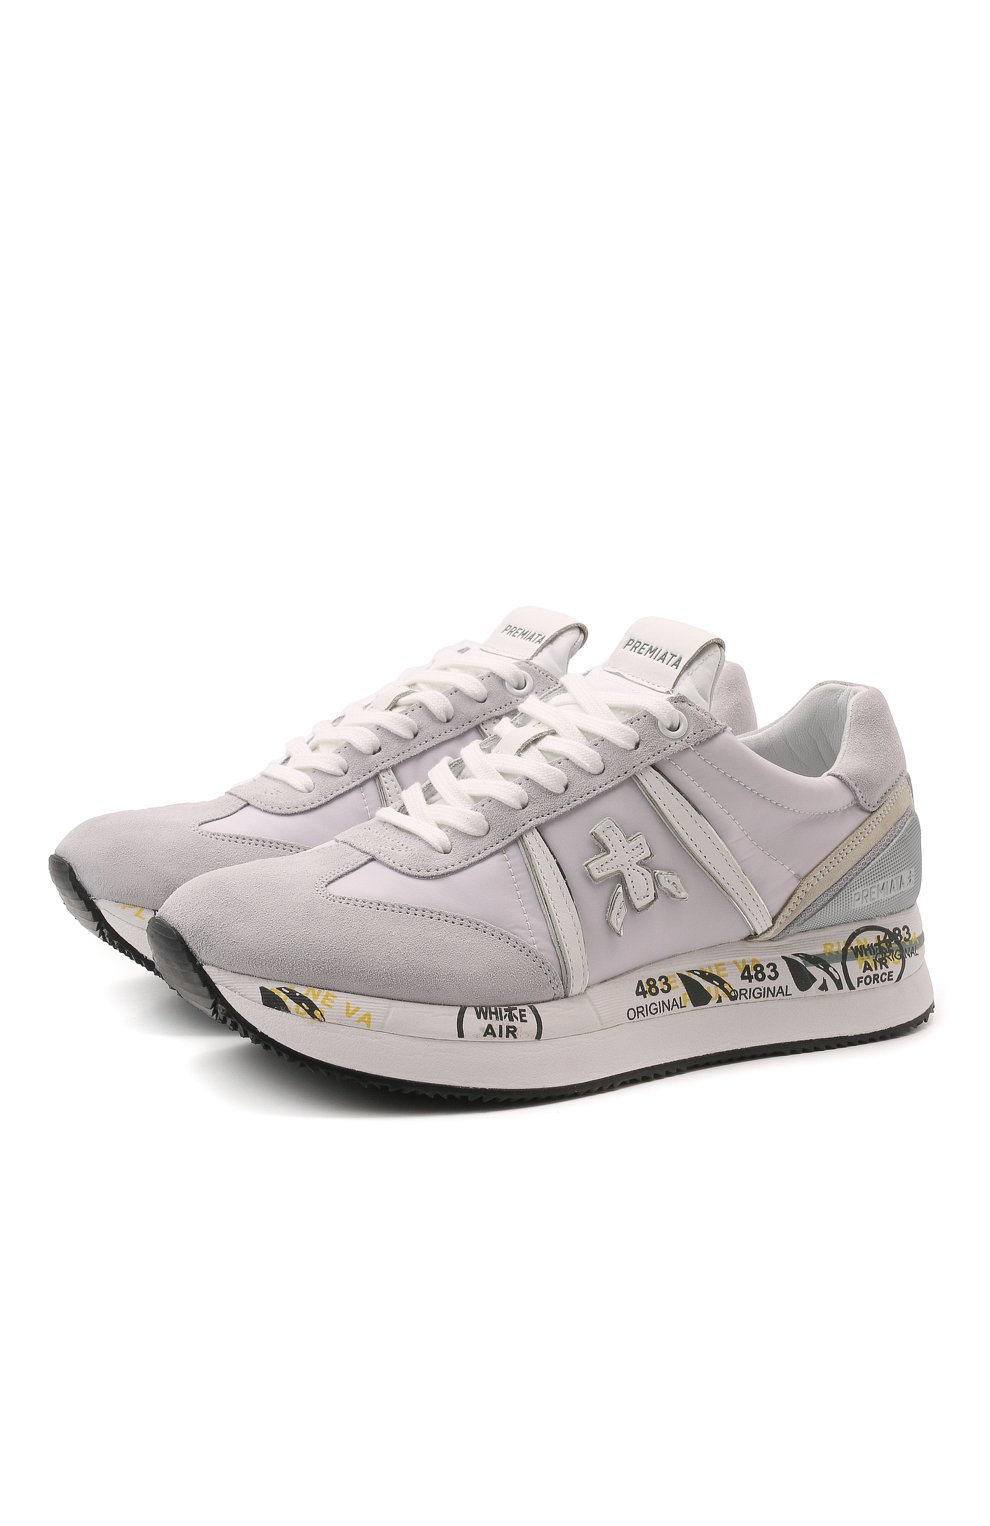 Комбинированные кроссовки Conny Premiata C0NNY/VAR5616, цвет серый, размер 41 C0NNY/VAR5616 - фото 1